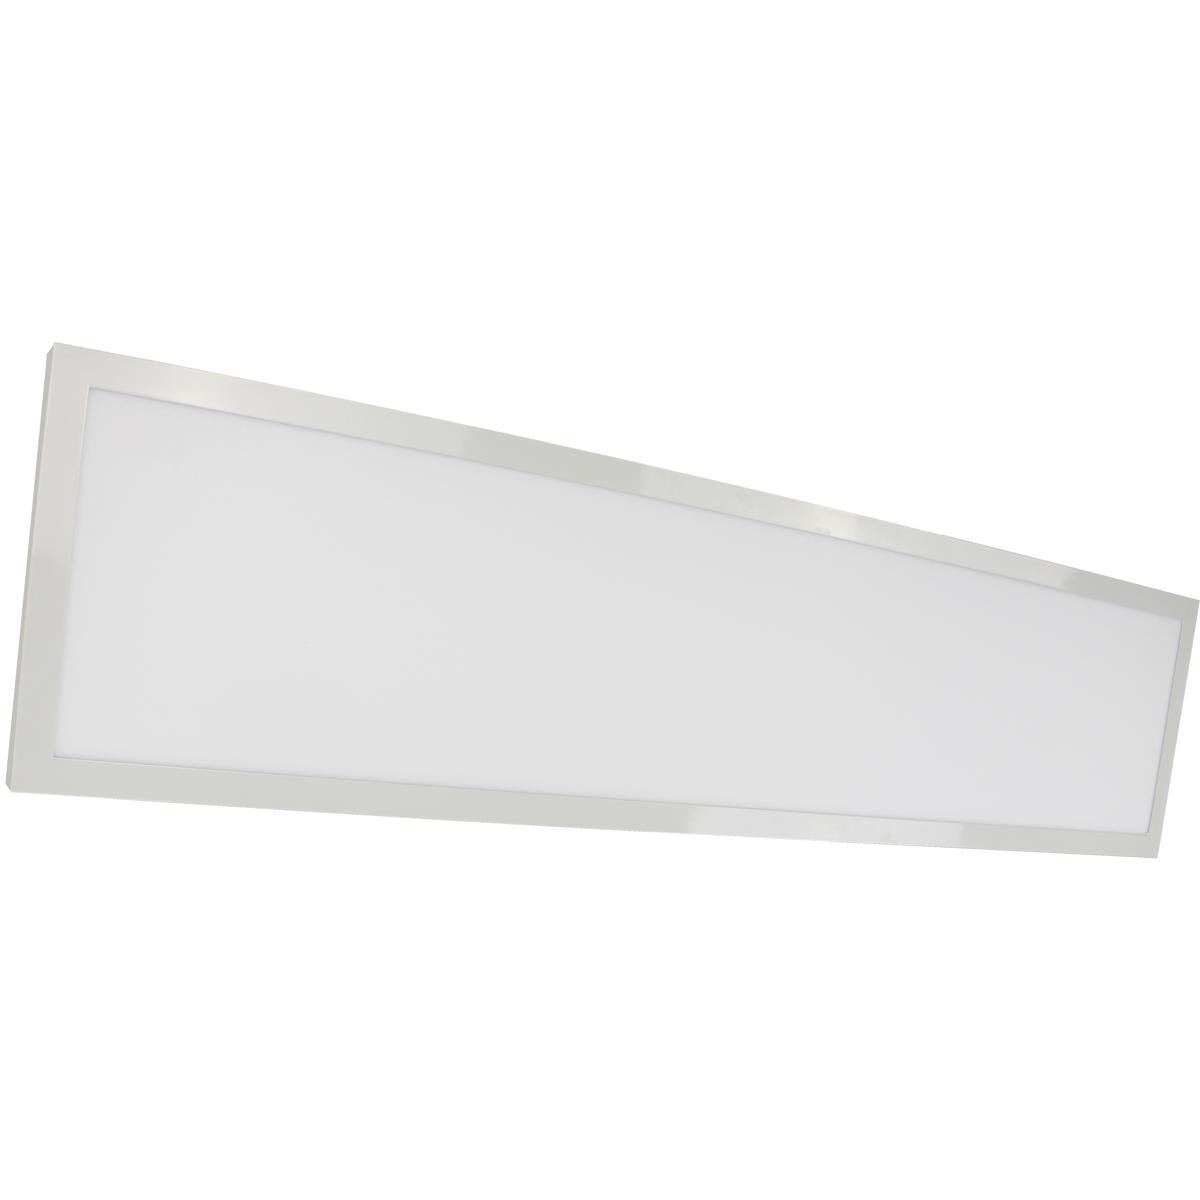 flat led panel light for vanity